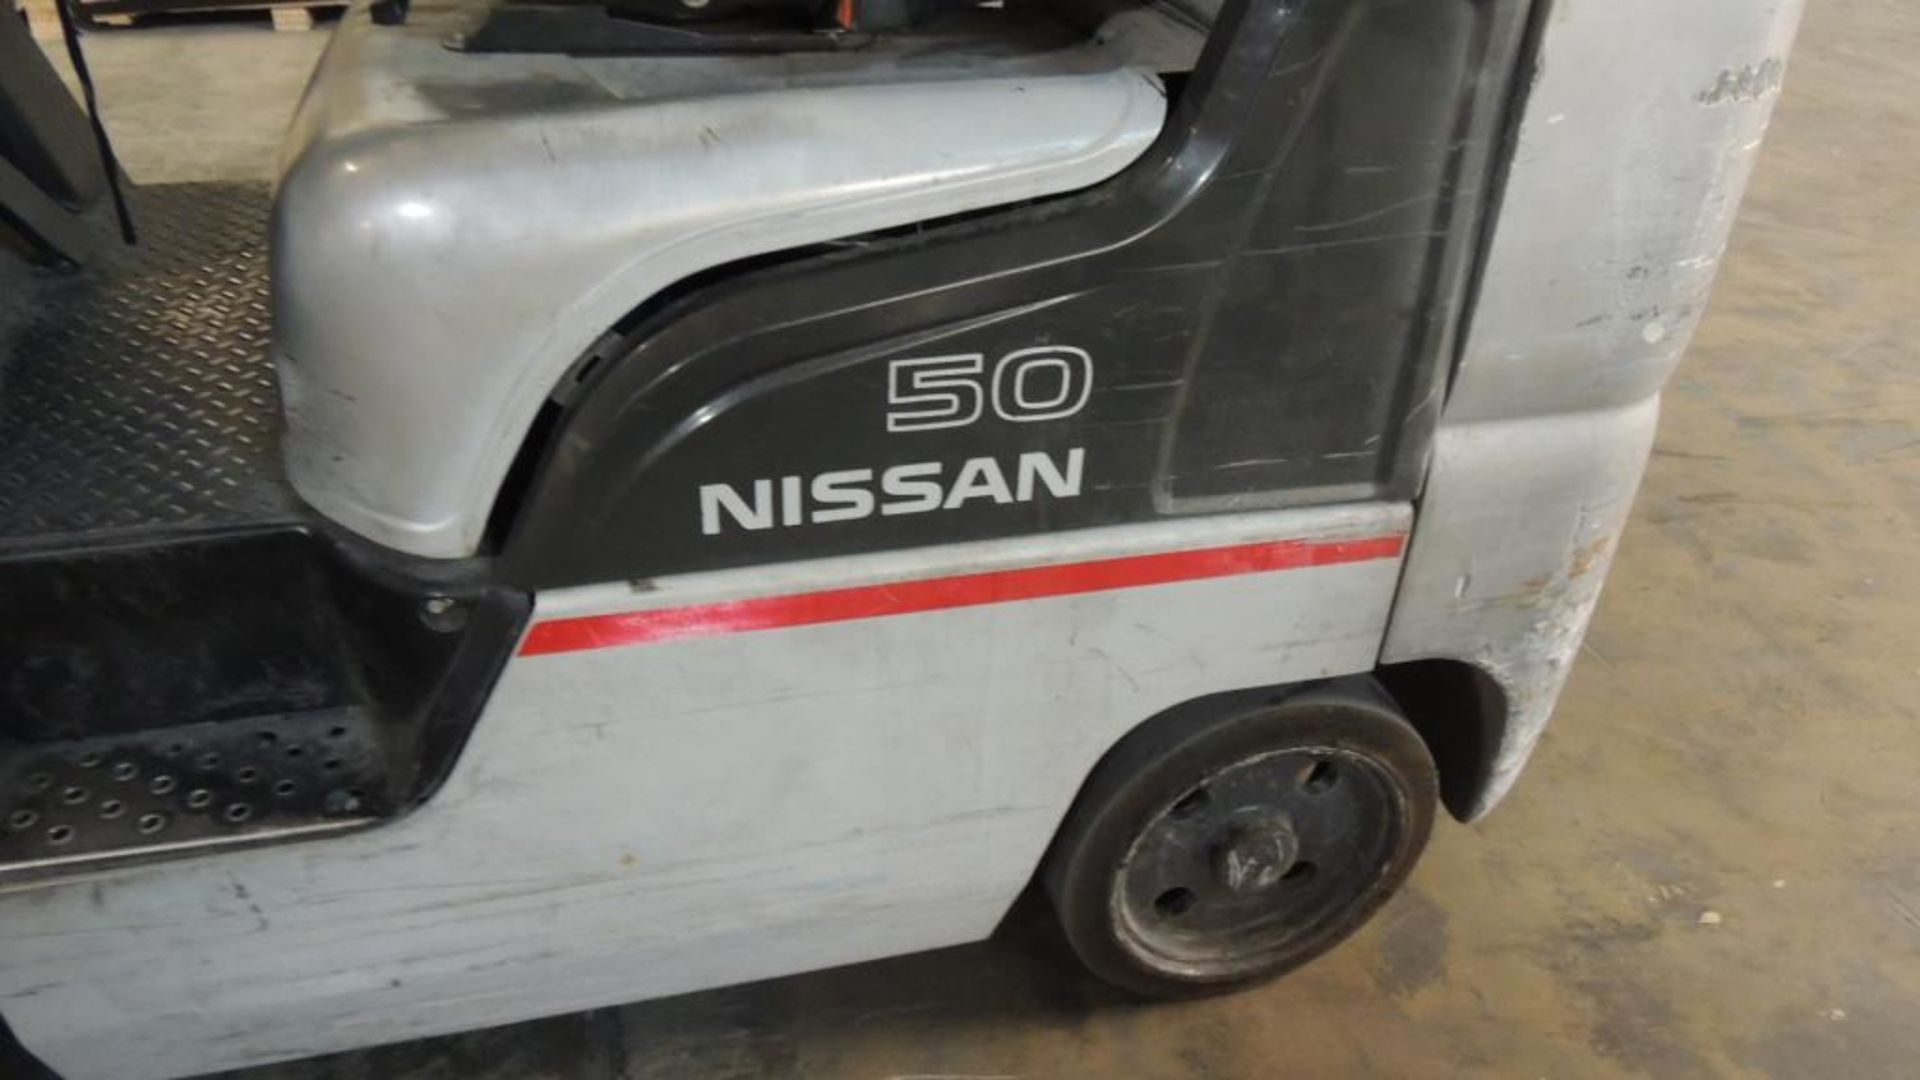 Nissan Forklift - Image 2 of 9